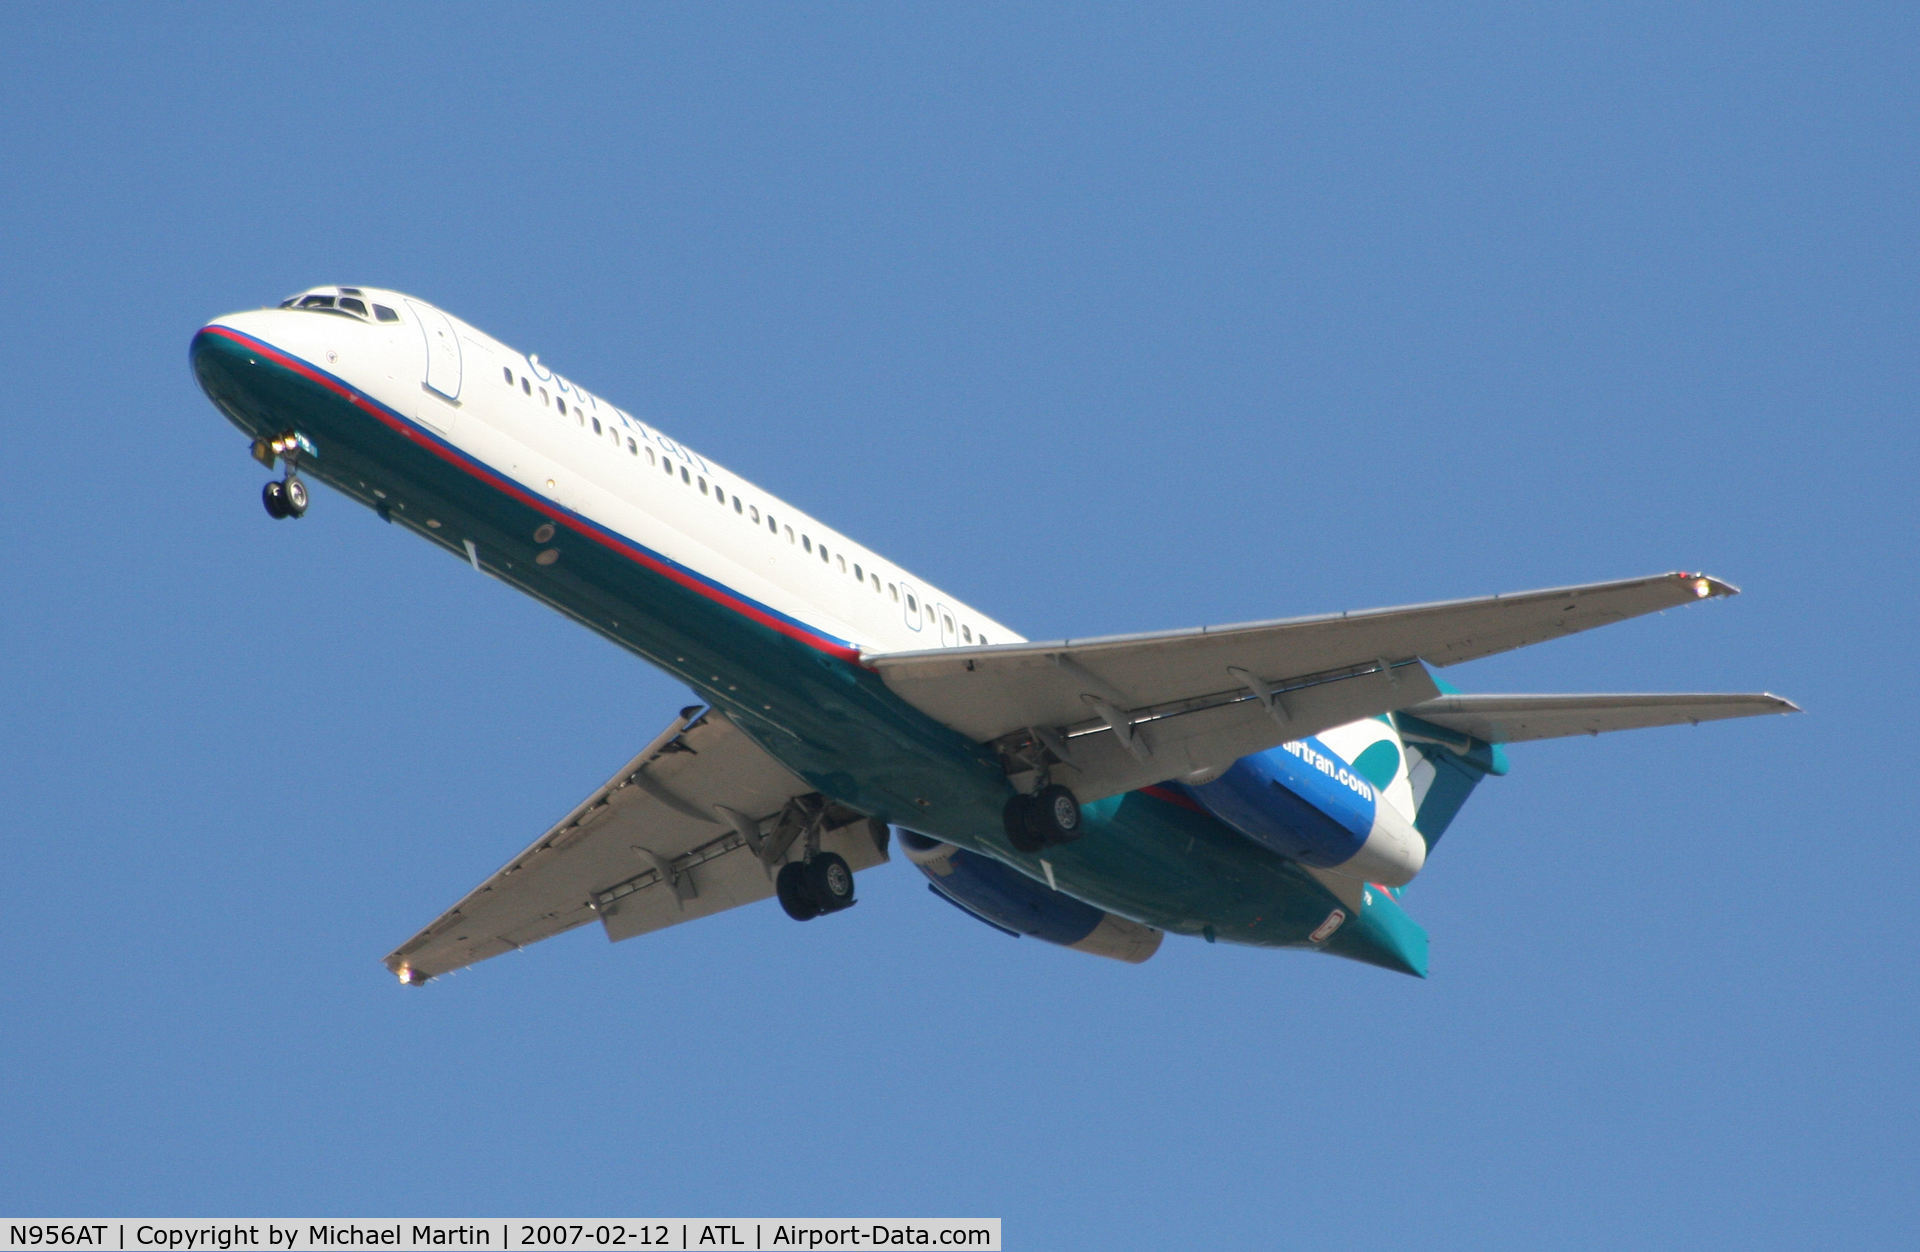 N956AT, 2000 Boeing 717-200 C/N 55018, On final for Runway 26L